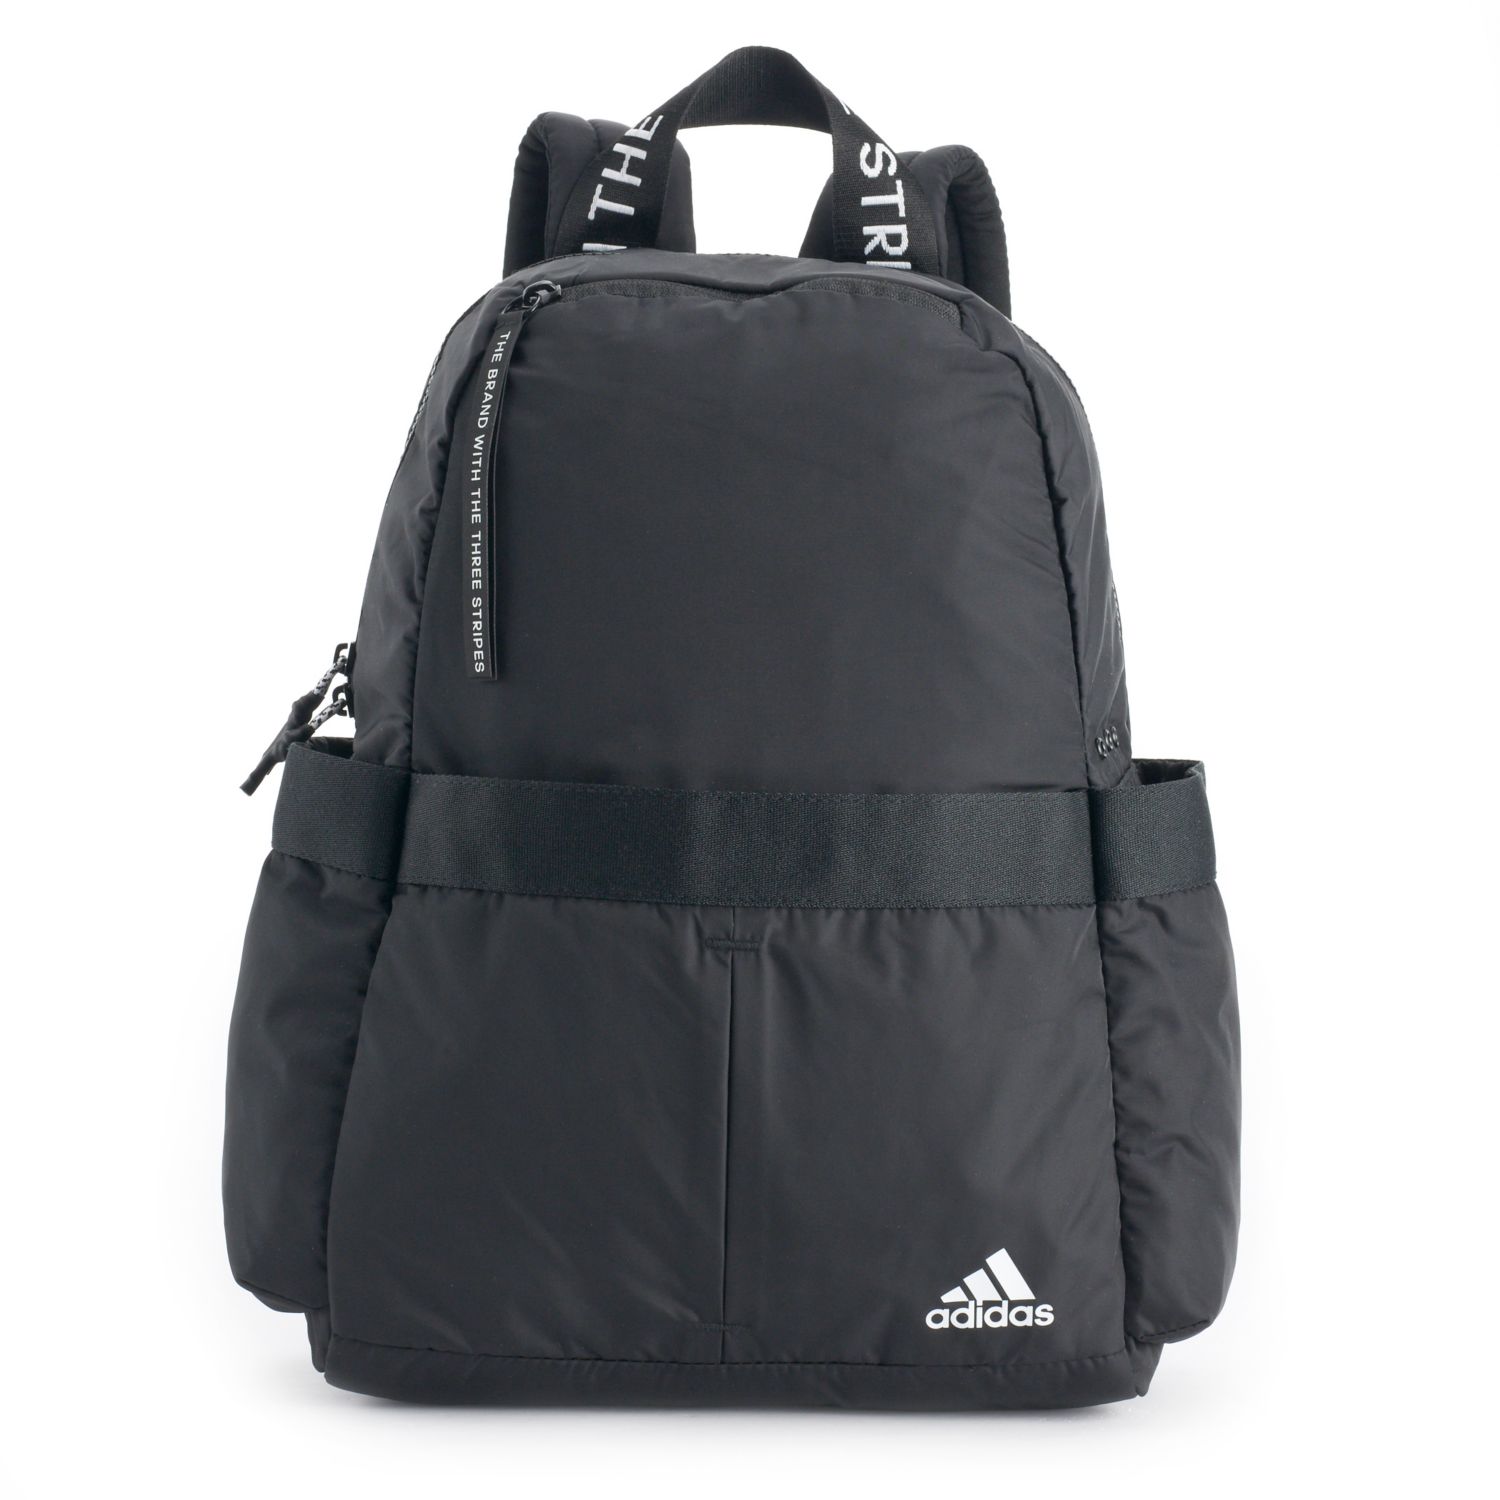 adidas vfa backpack ash grey